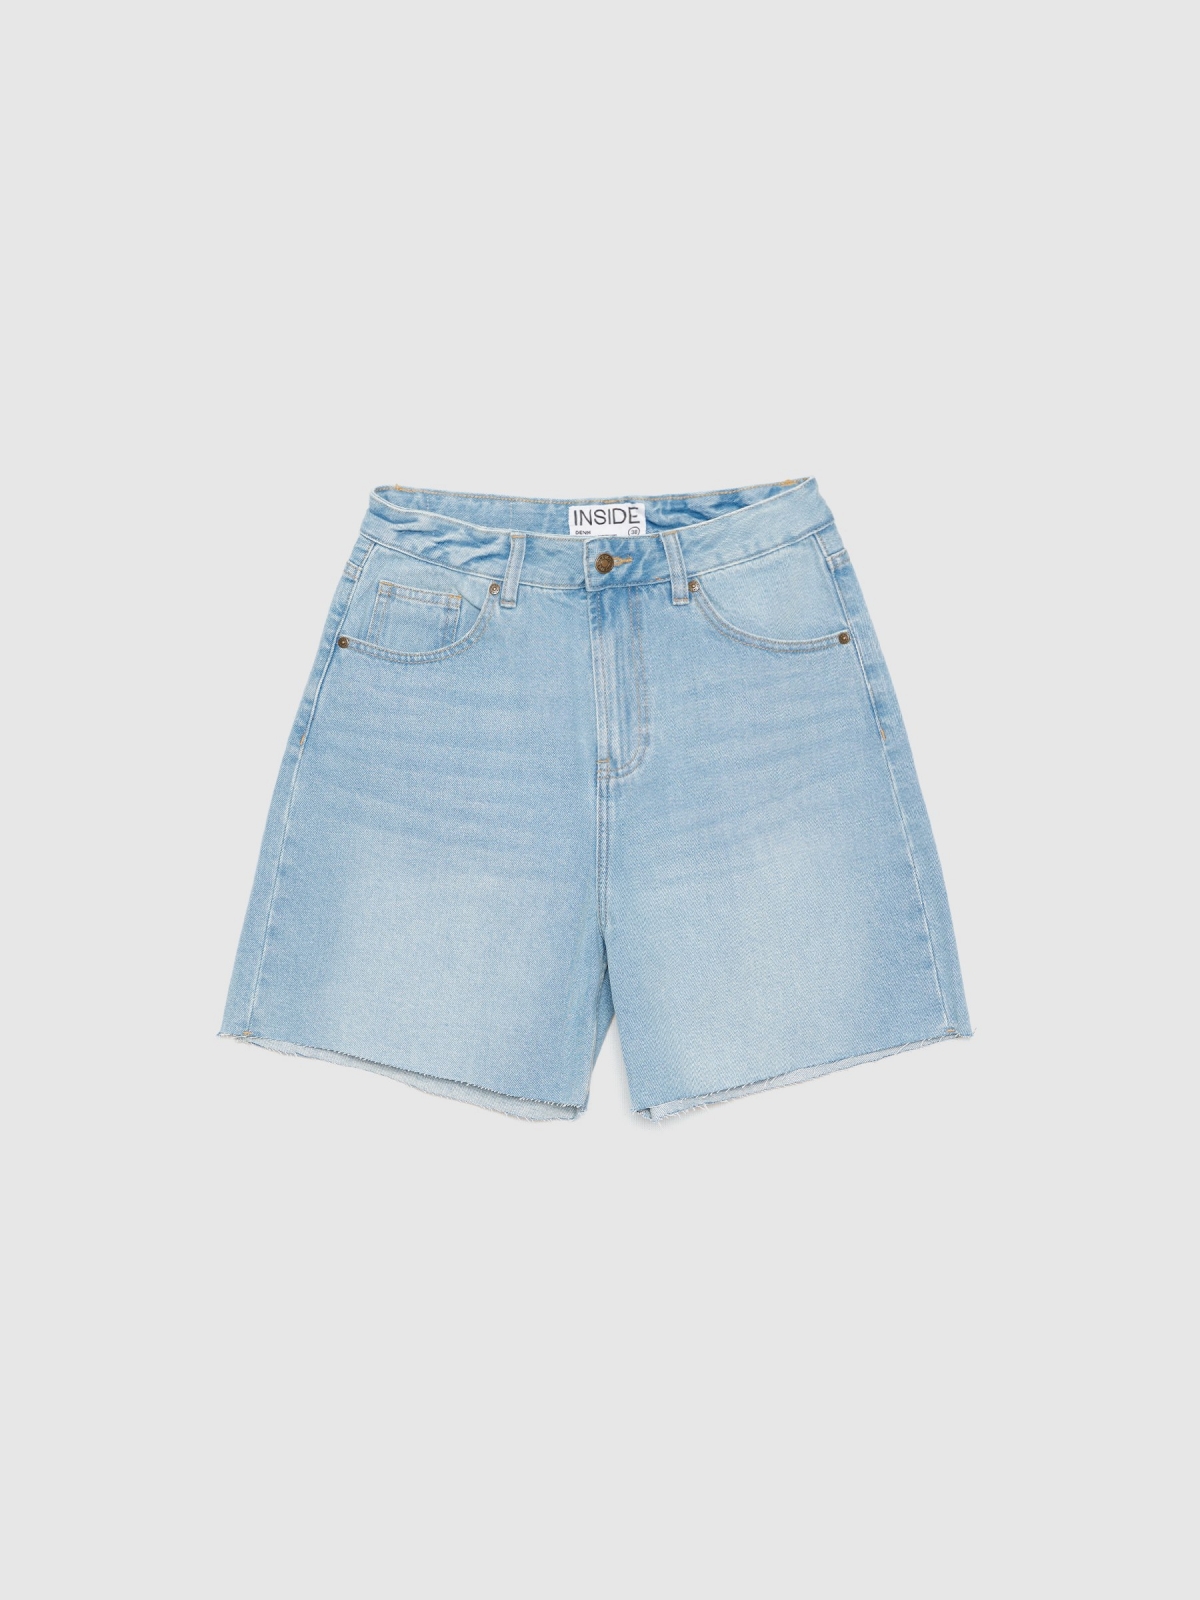  High-waisted denim shorts light blue